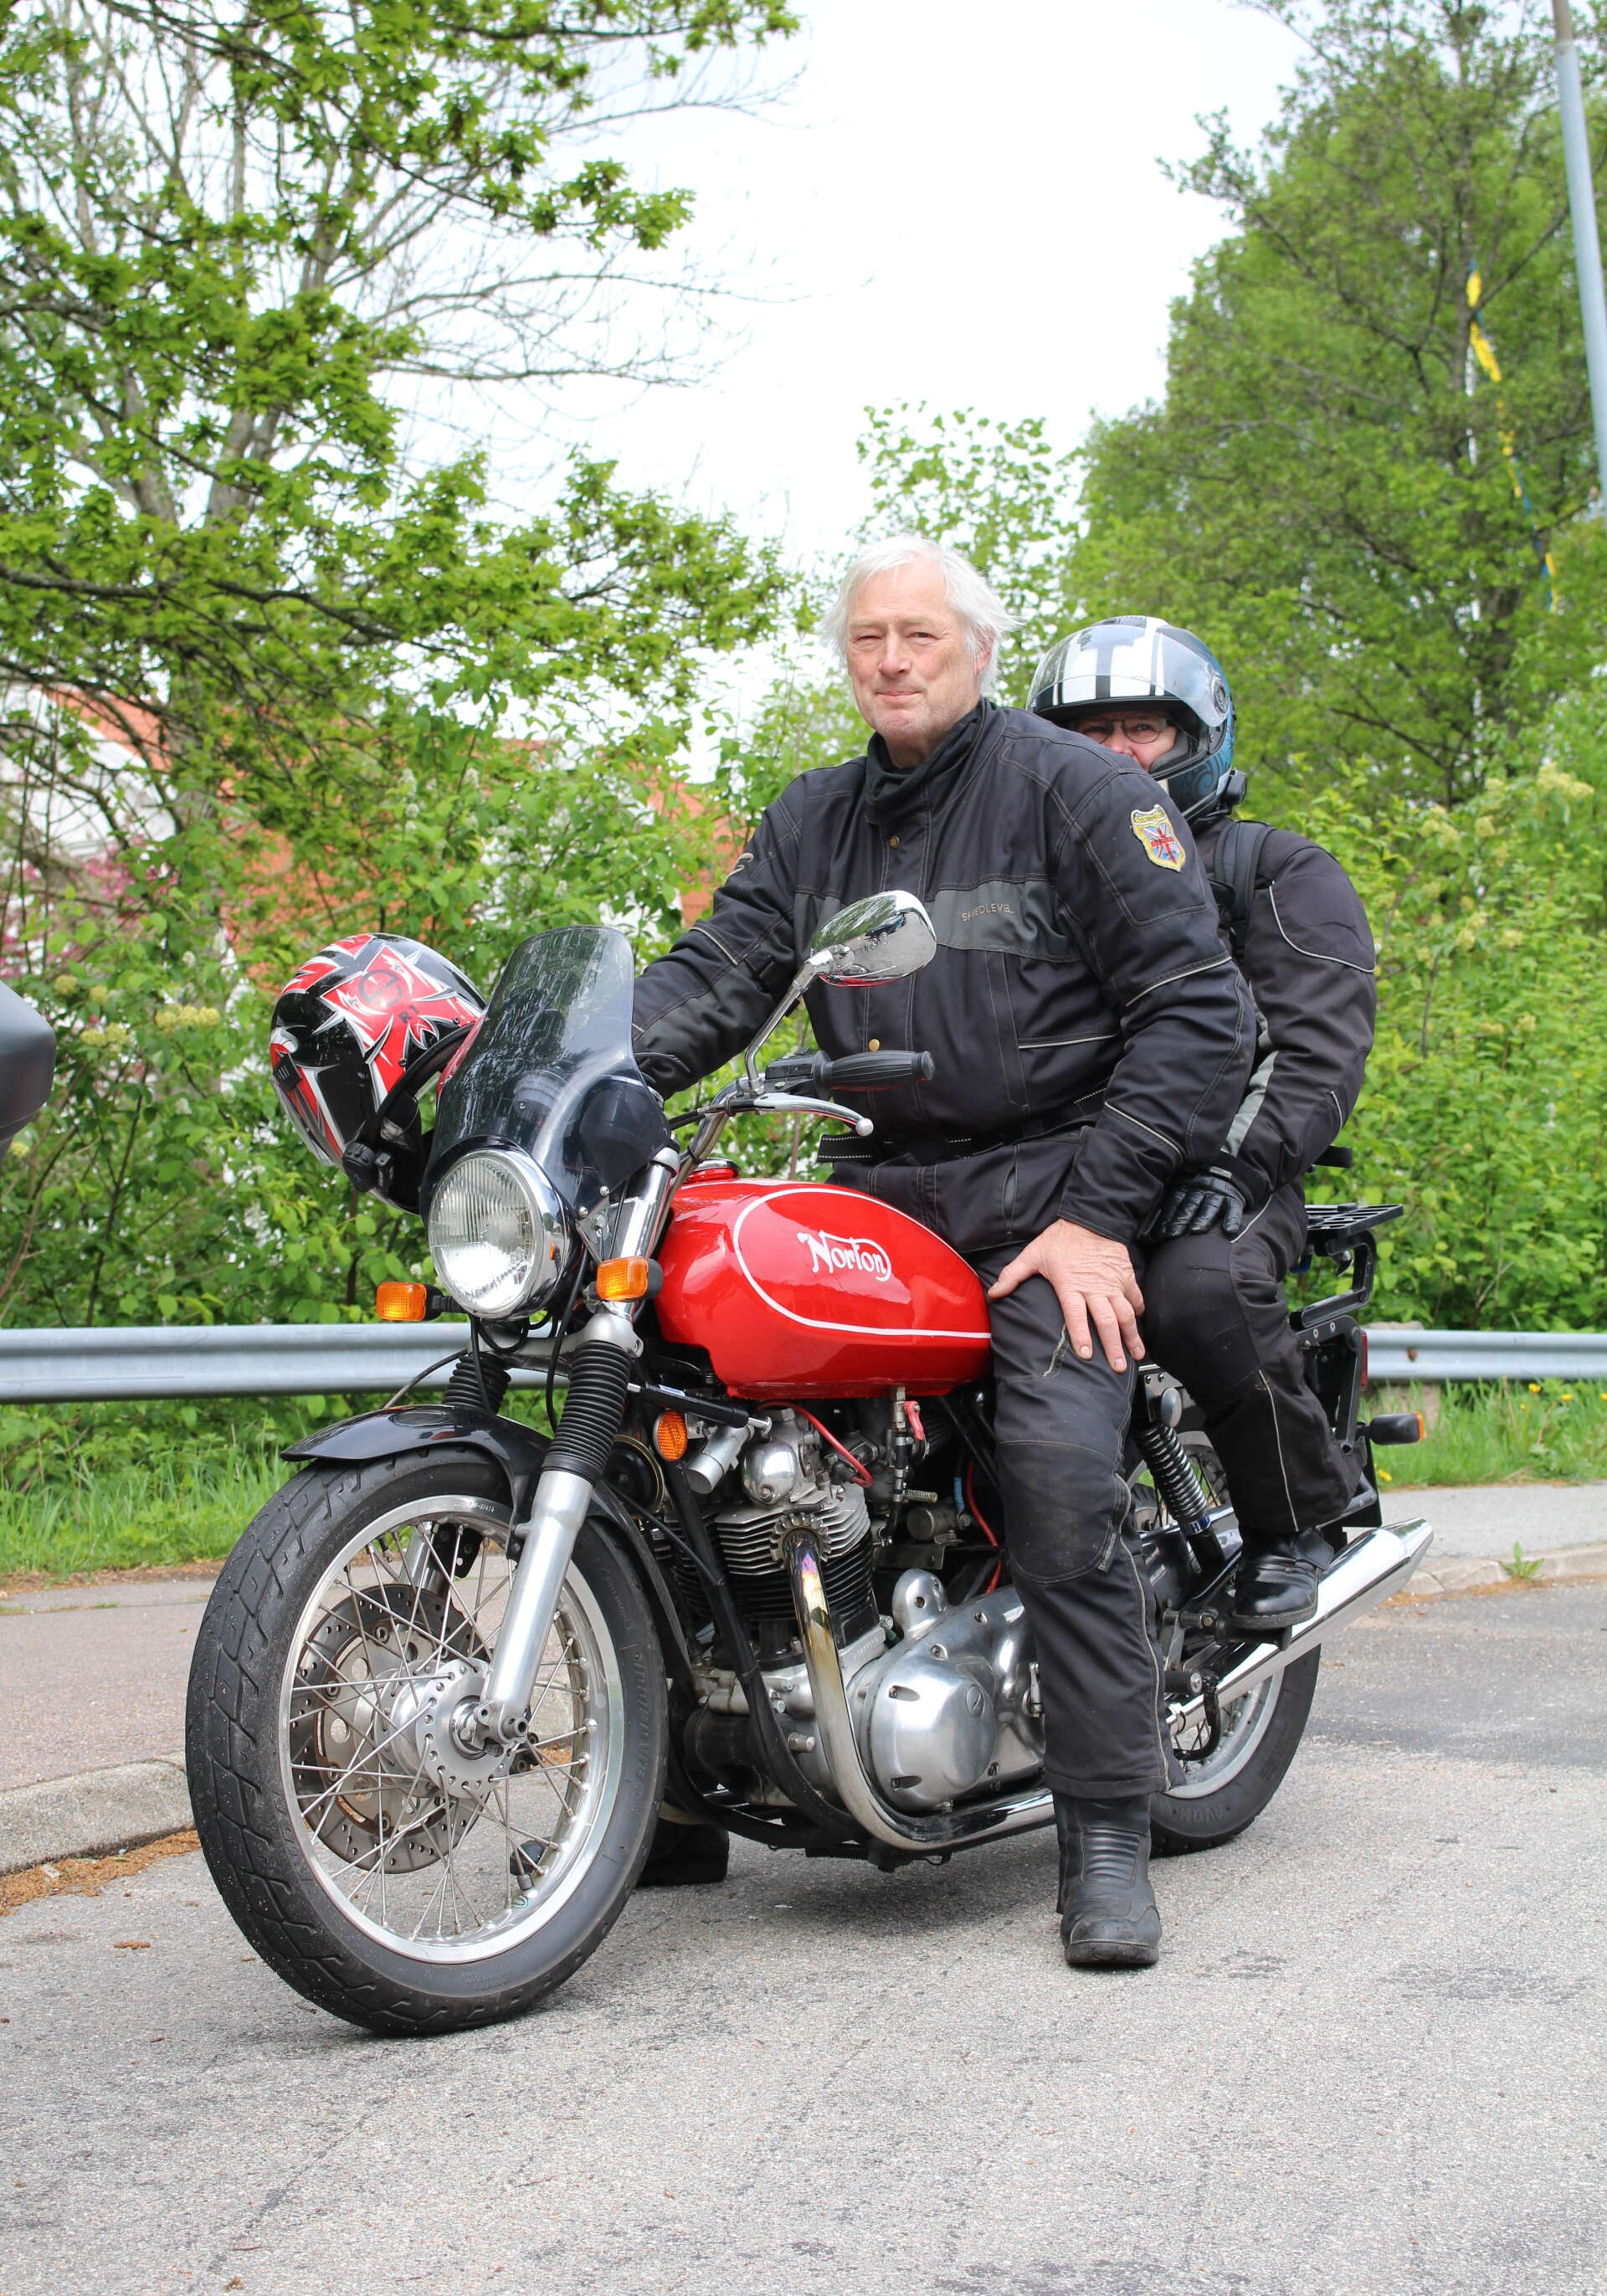 Att köra Norton är en trevlig och avkopplande hobby, tycker Klas Wejle, ordförande för Norton Owners Club of Sweden. Hans fru Kristina åker gärna med.